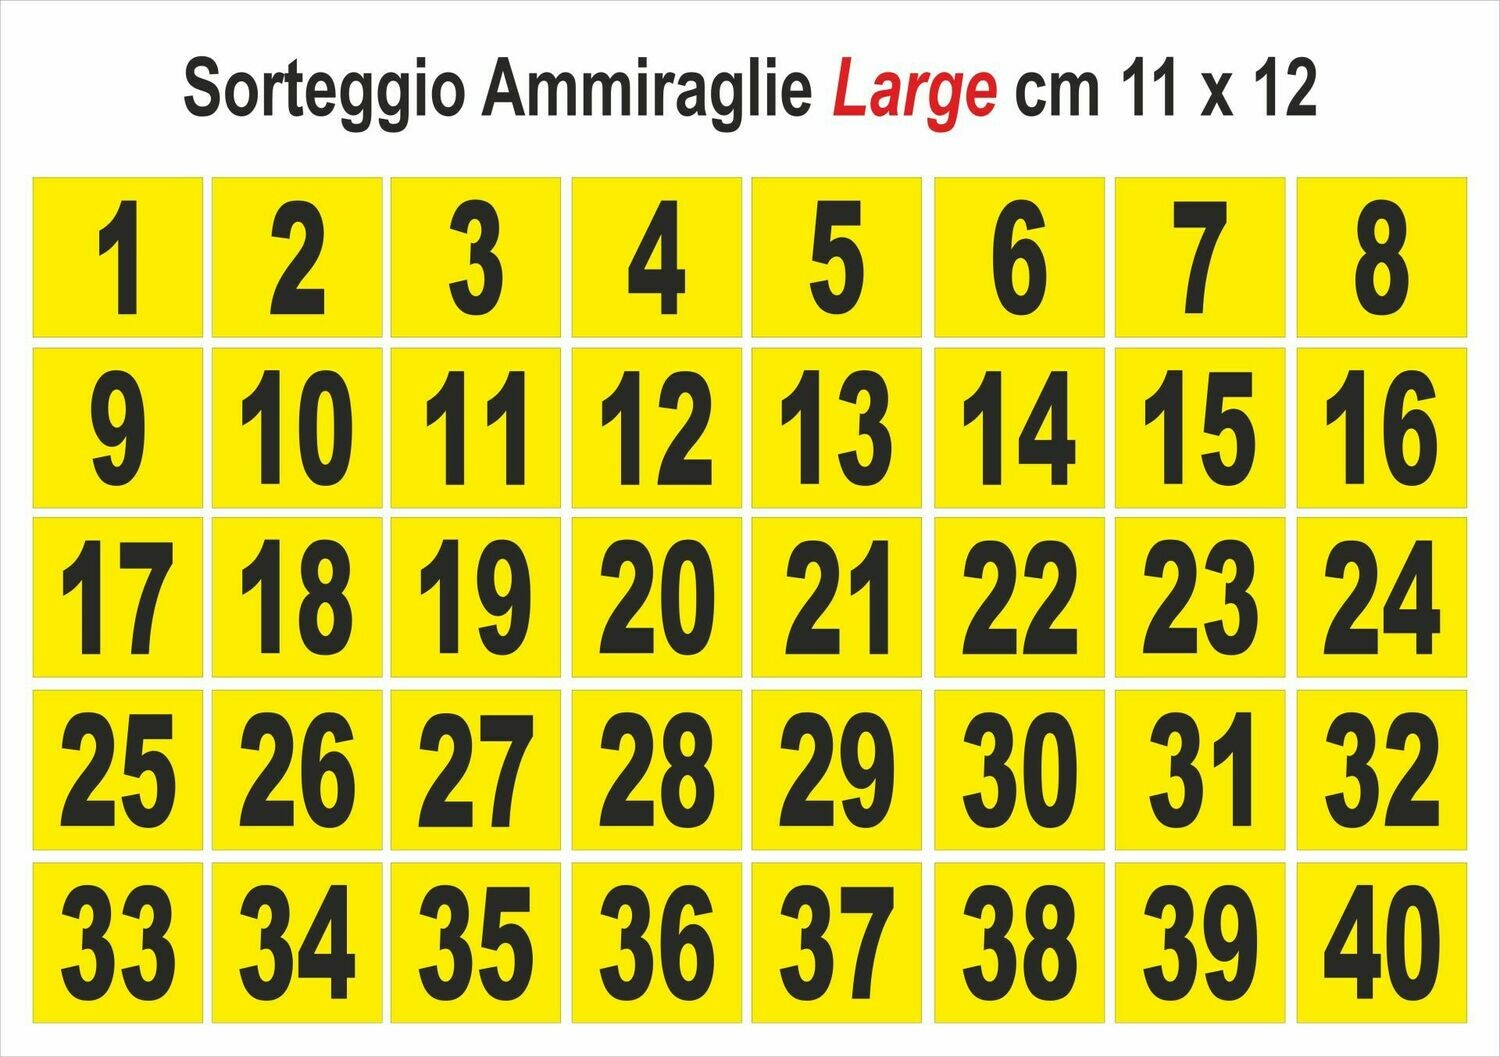 Large - Numeri da 1 a 40 cm 11 x 12